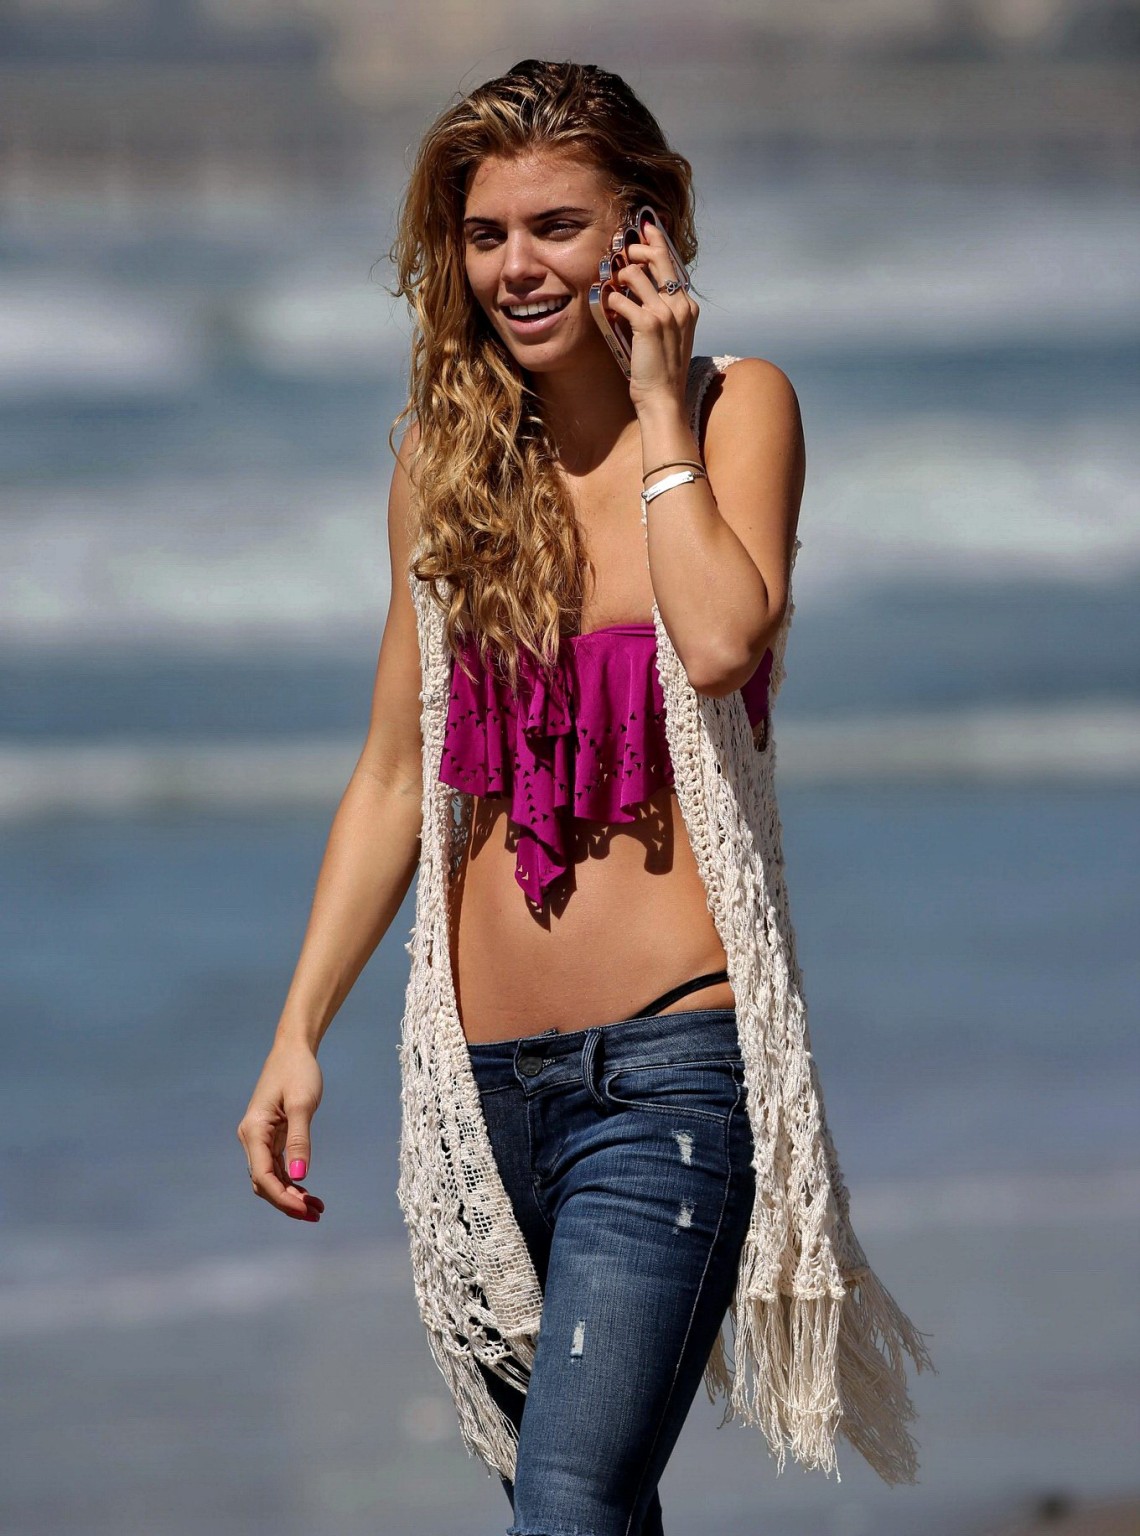 チューブトップのジーンズを着たAnnalynne MccordがLAのビーチで撮影
 #75202270